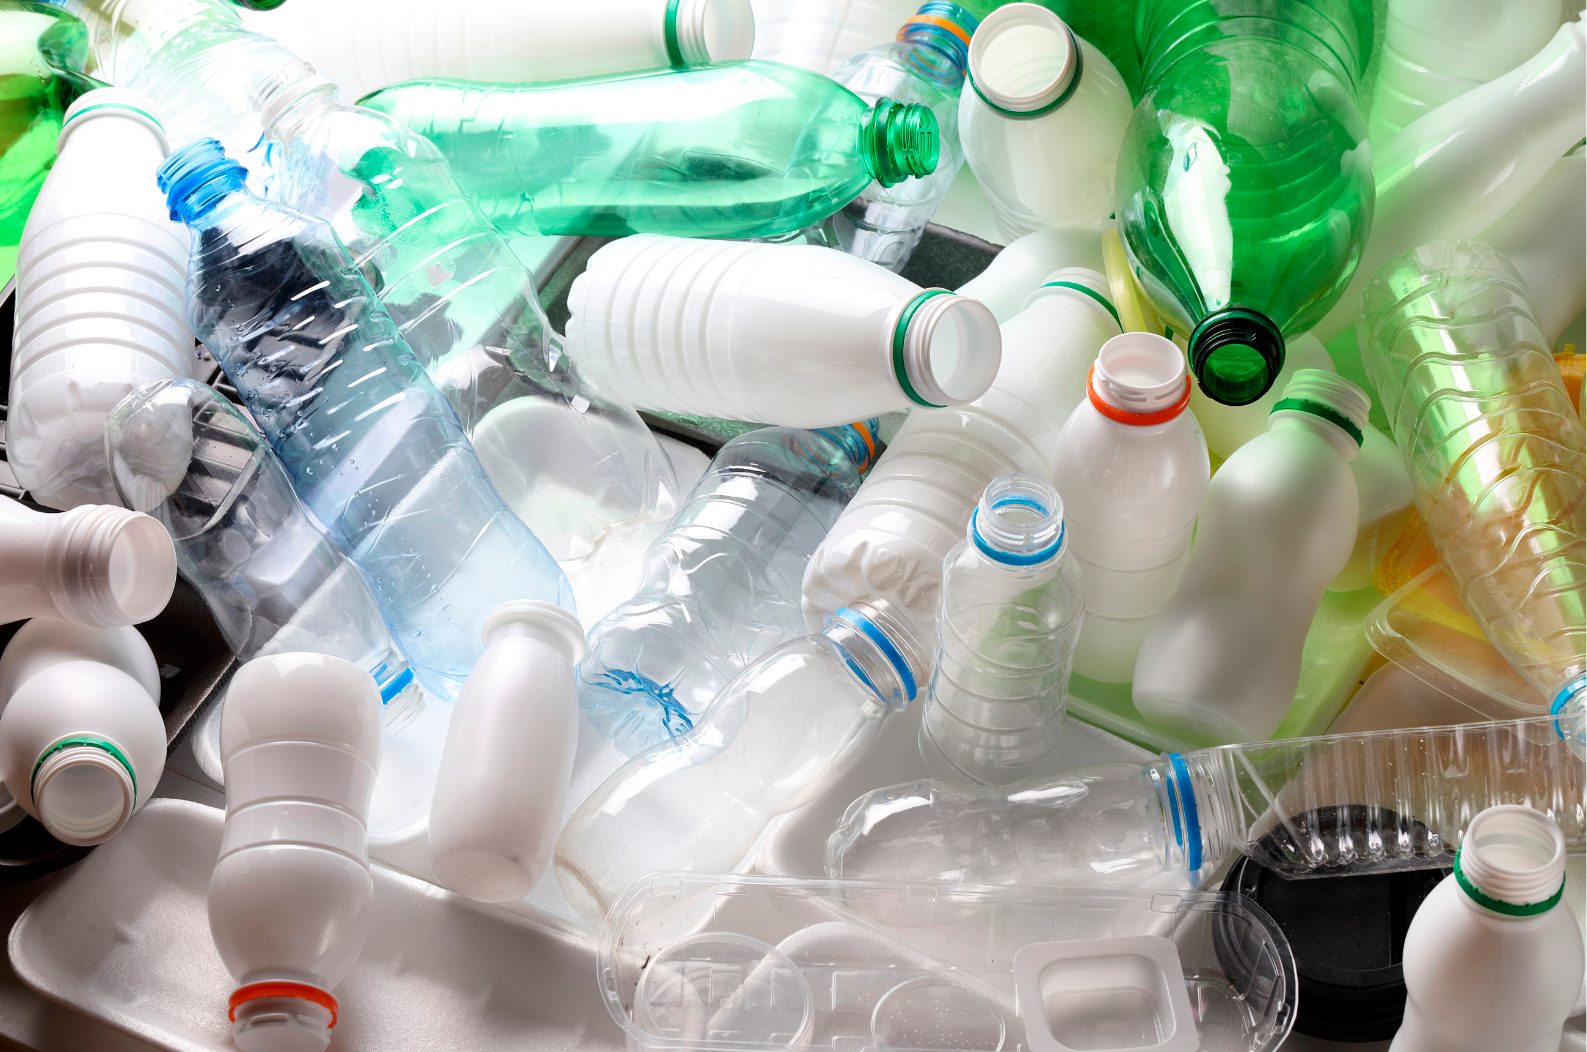 En la imagen, fotografía de varios envases de plástico facilitada por ibs.Granada. EFE